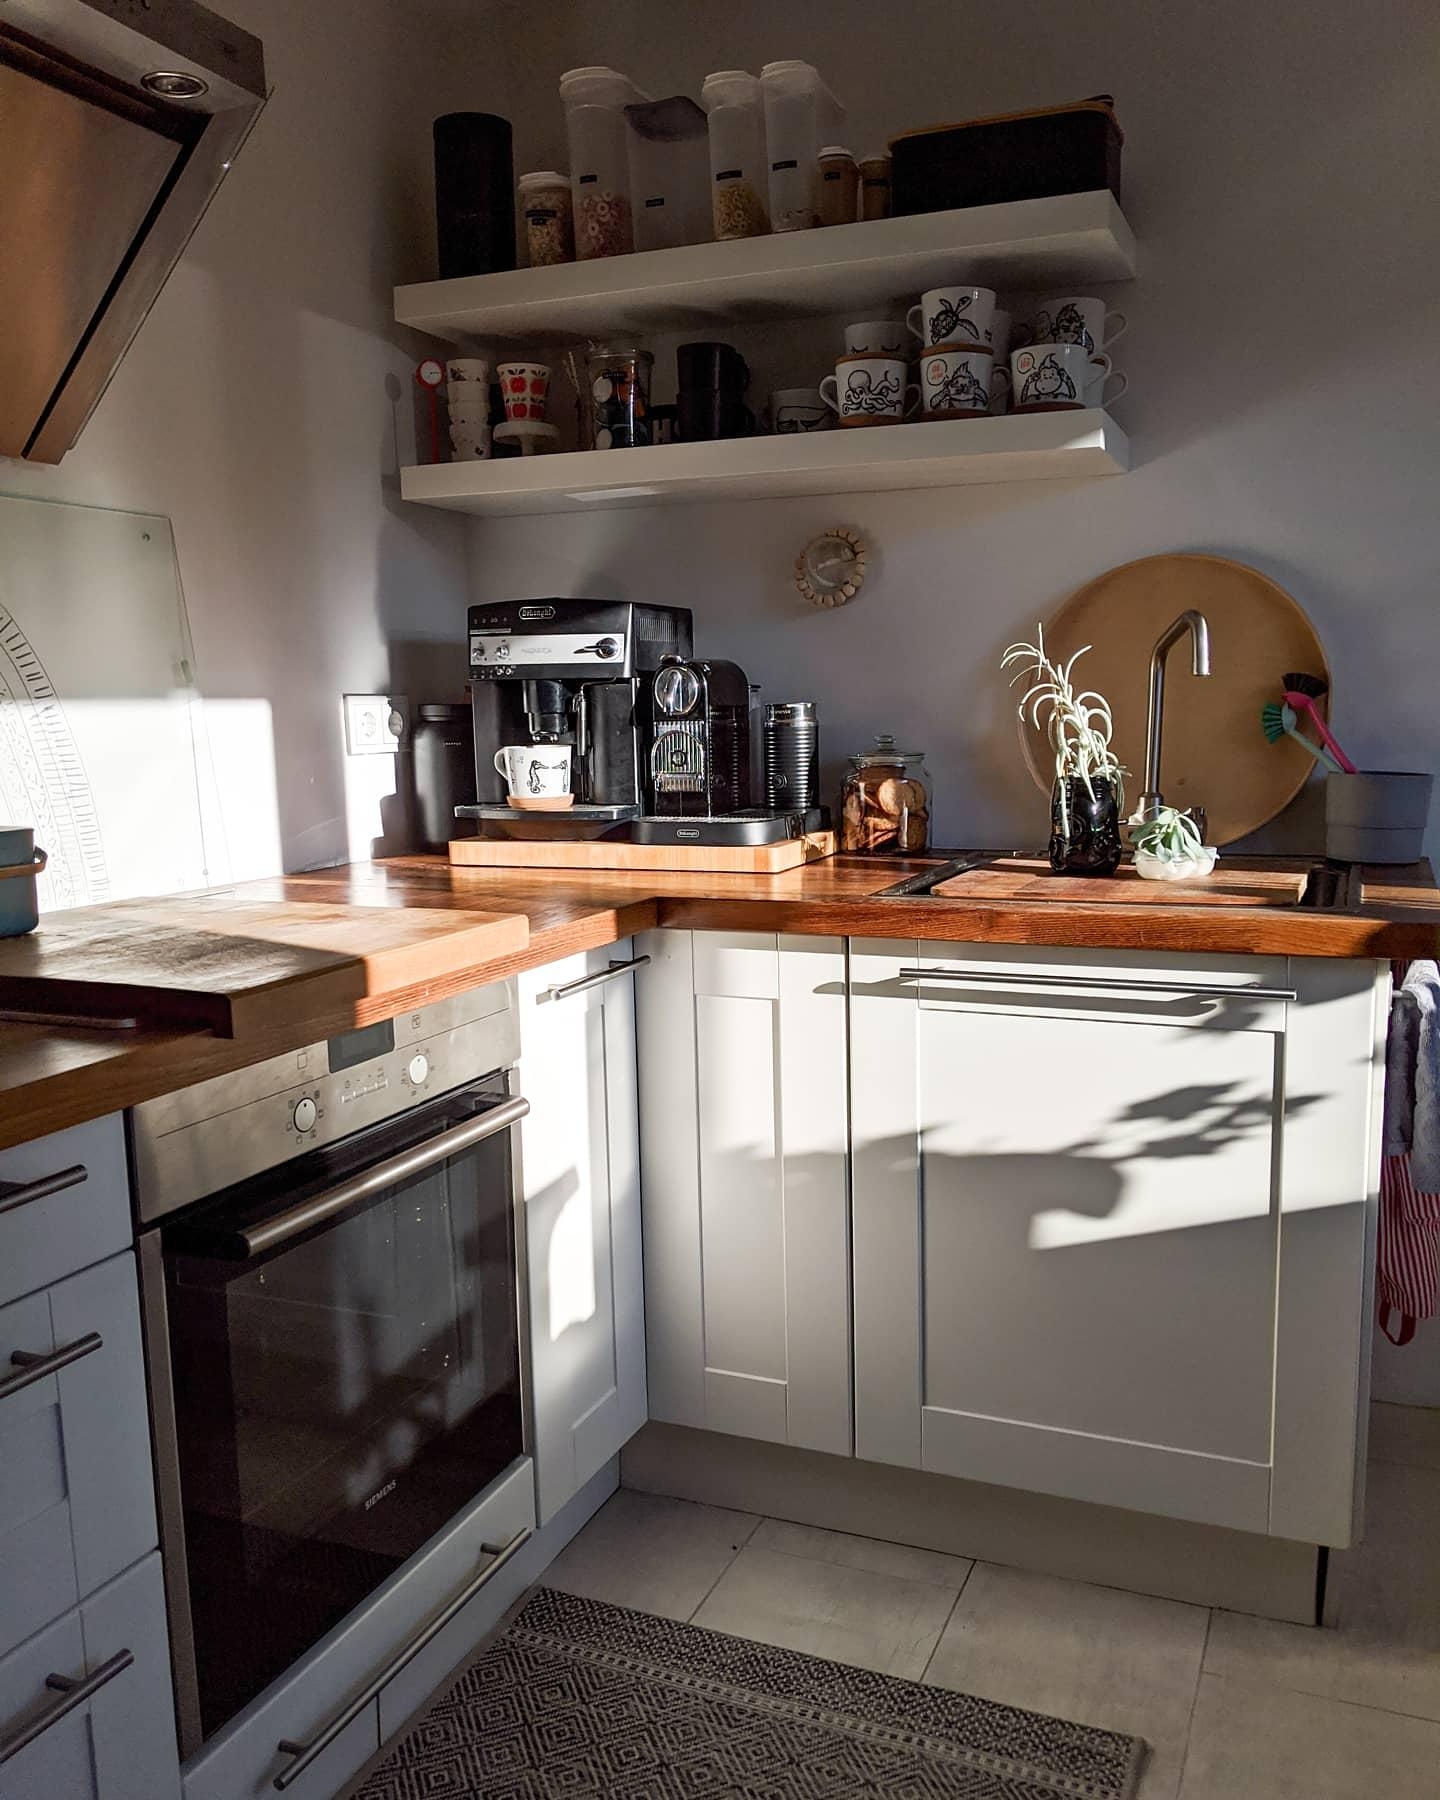 Wenn die Sonne einen am Hotspot so begrüßt... Herrlich
. 
#küche
#lichtundschatten 
#minimalism 
#kaffeeliebe 
#weiß